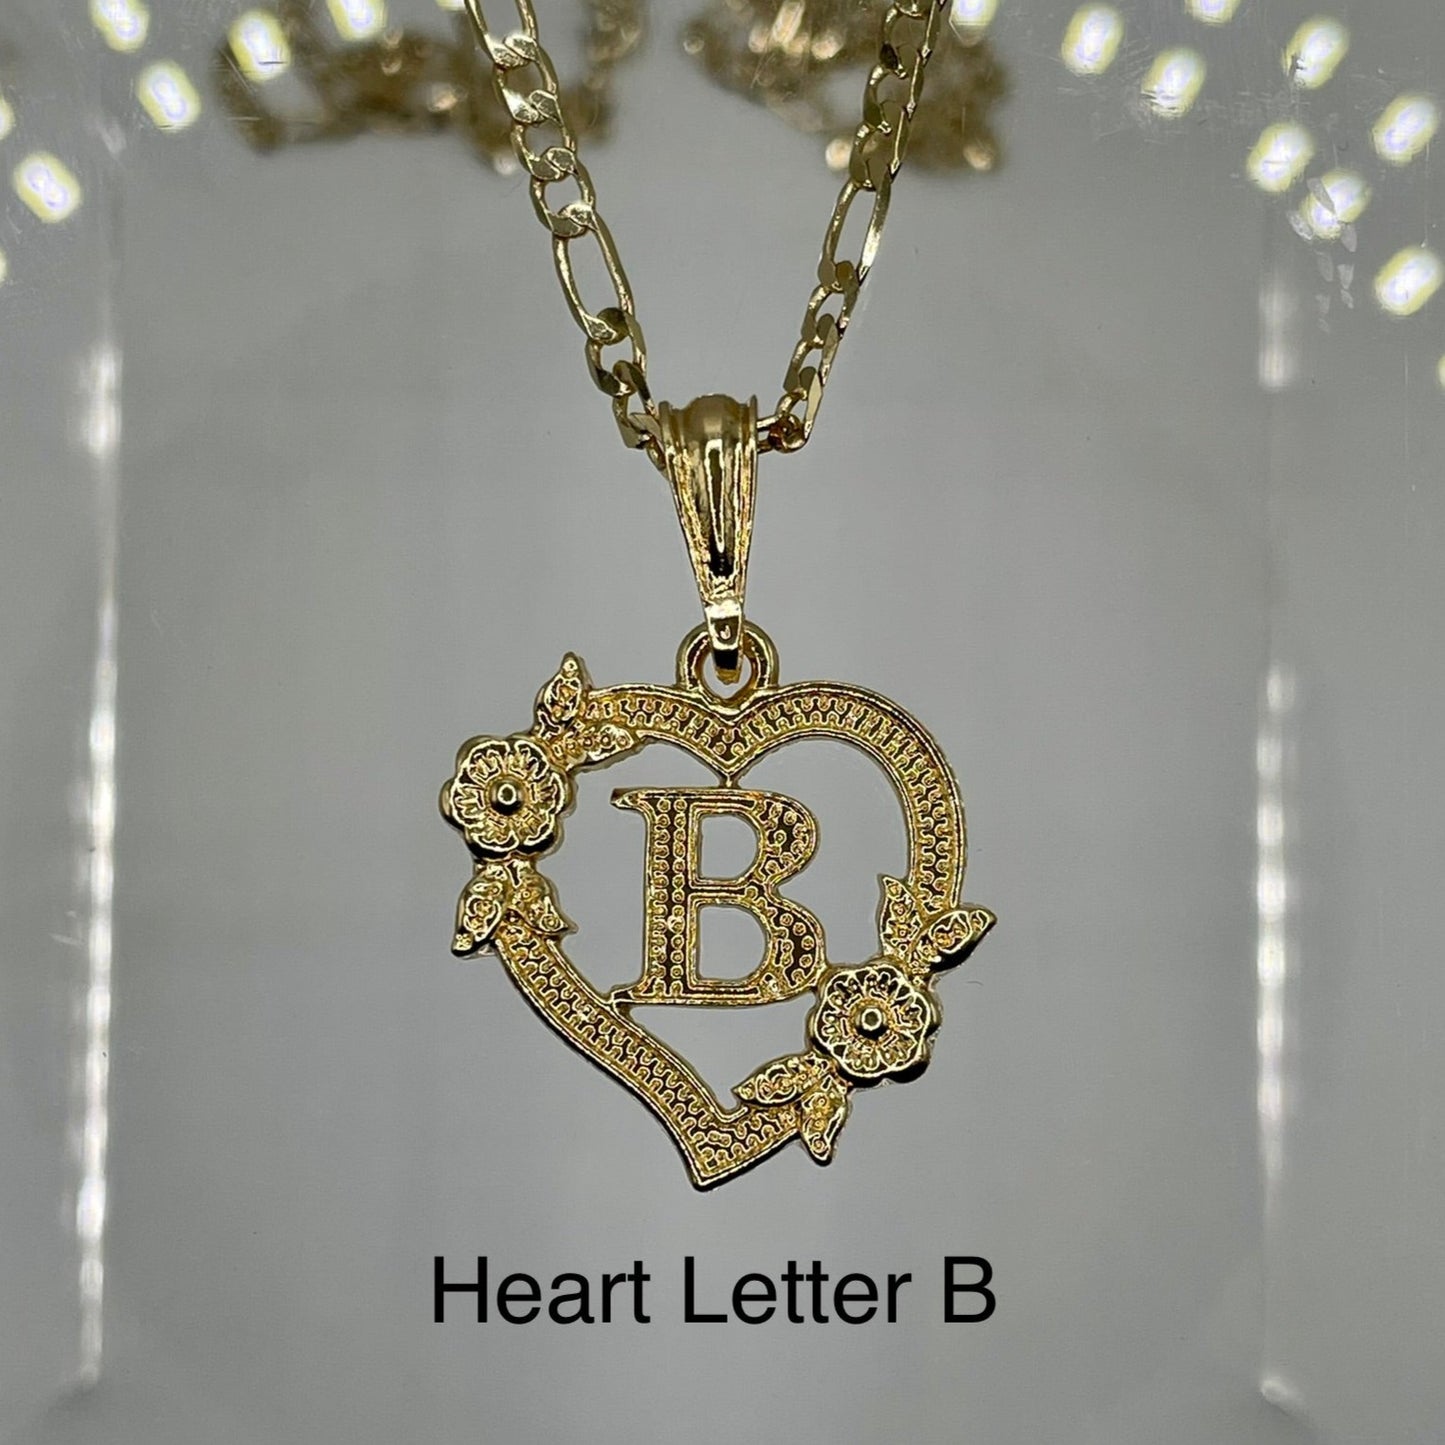 Heart letter B pendant. Gold heart pendant. Letter pendants.